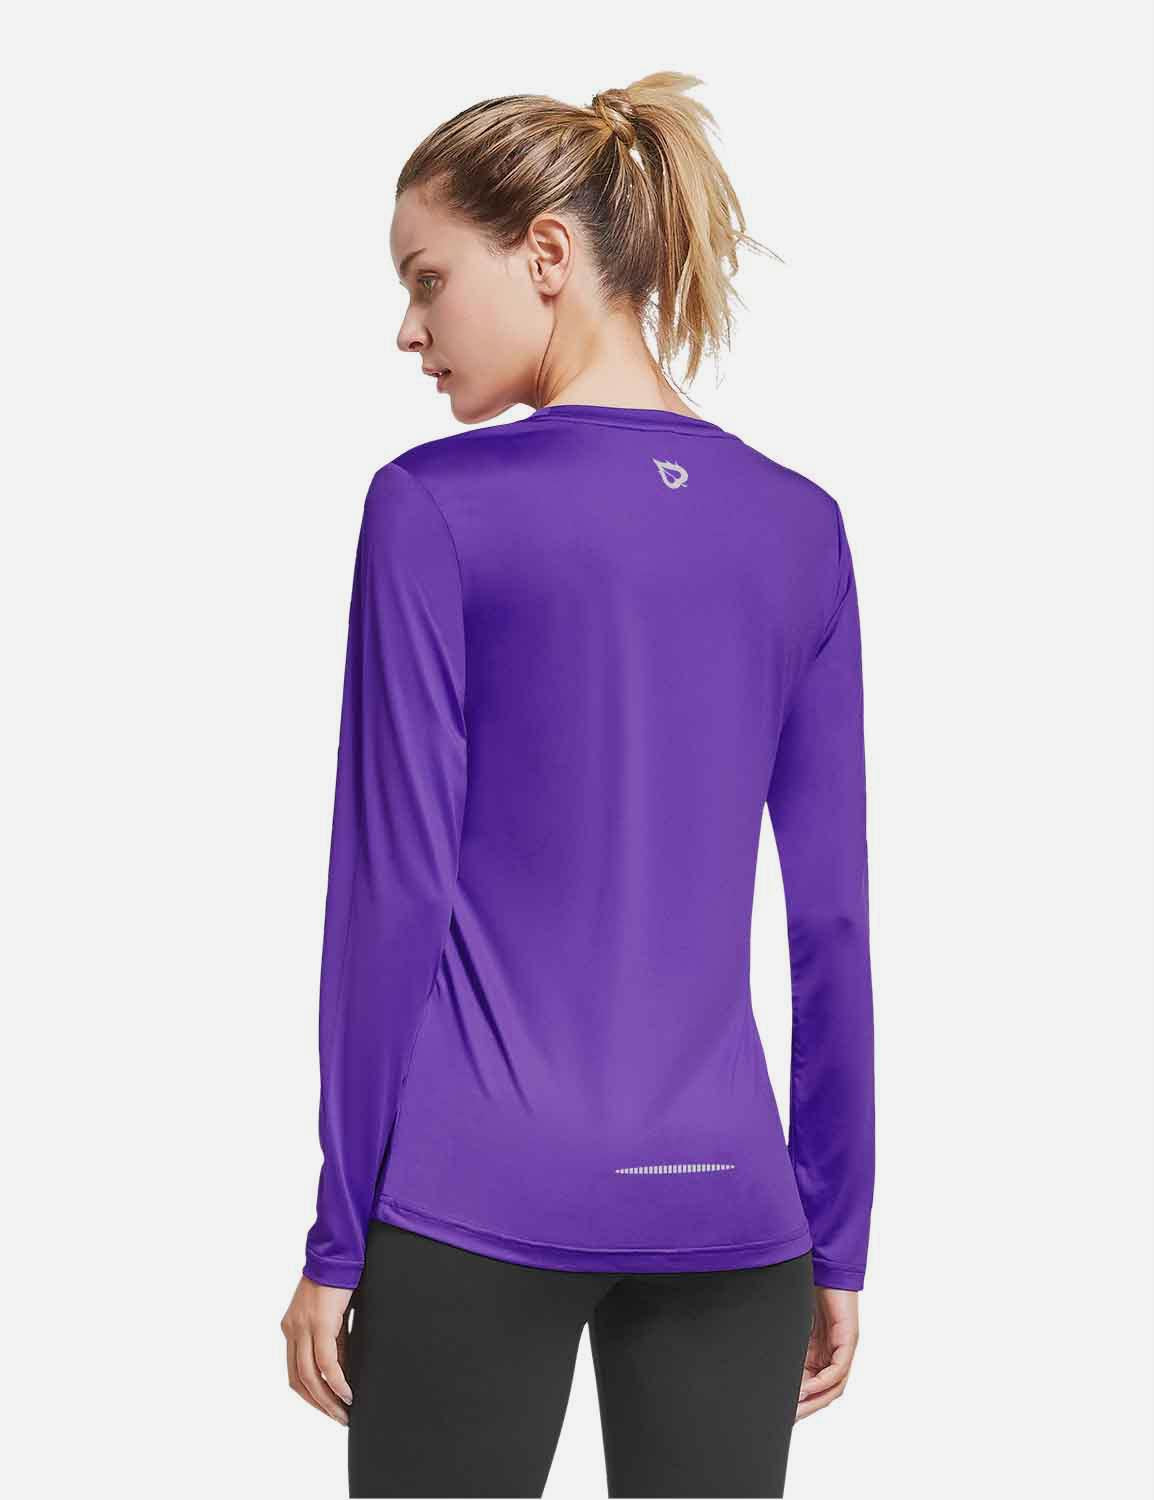 BALEAF Women's Loose Fit Tagless Workout Long Sleeved Shirt abd294 Purple Back